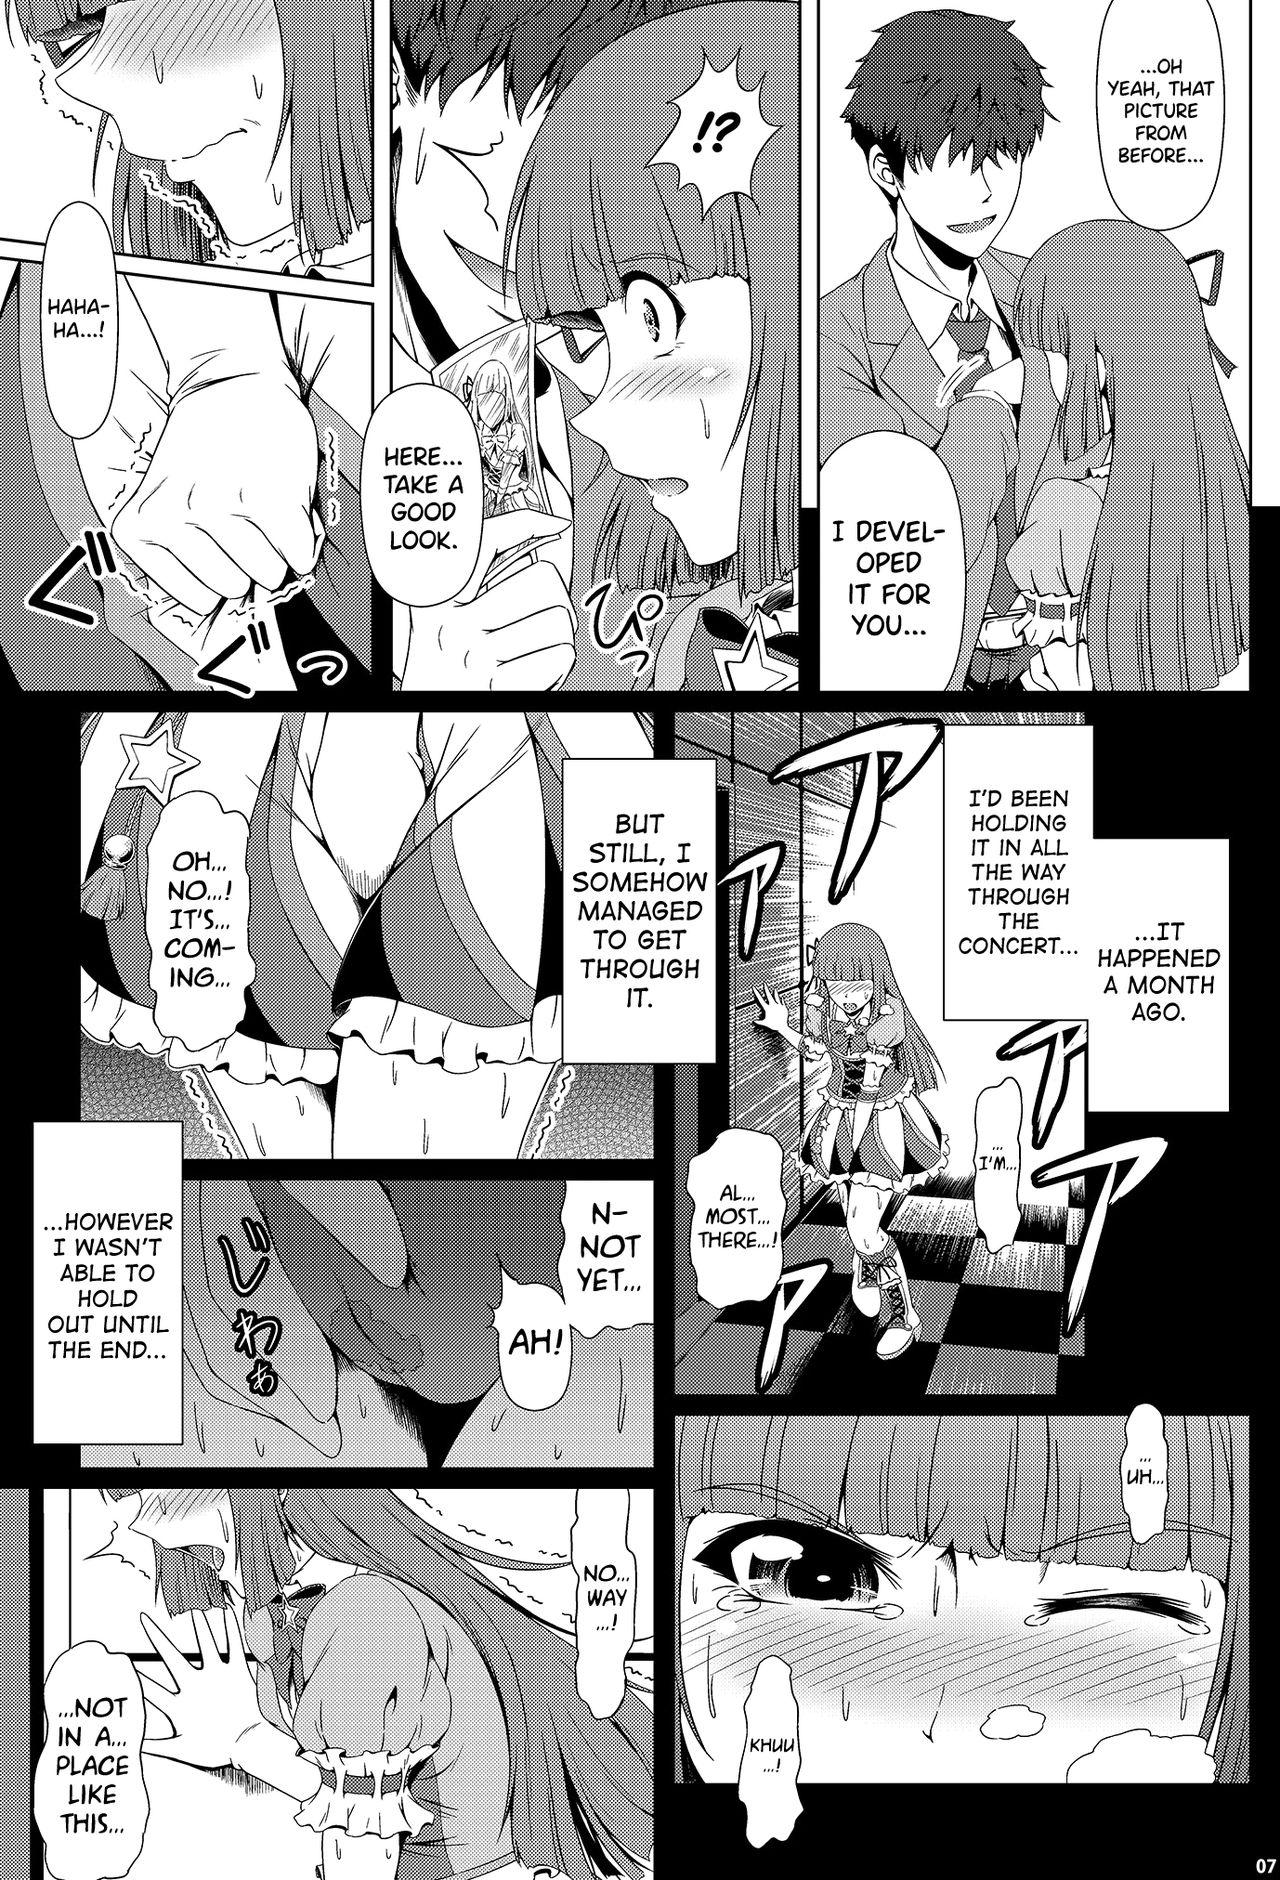 Awesome Kindan no Hyouka - Aikatsu Spreading - Page 6